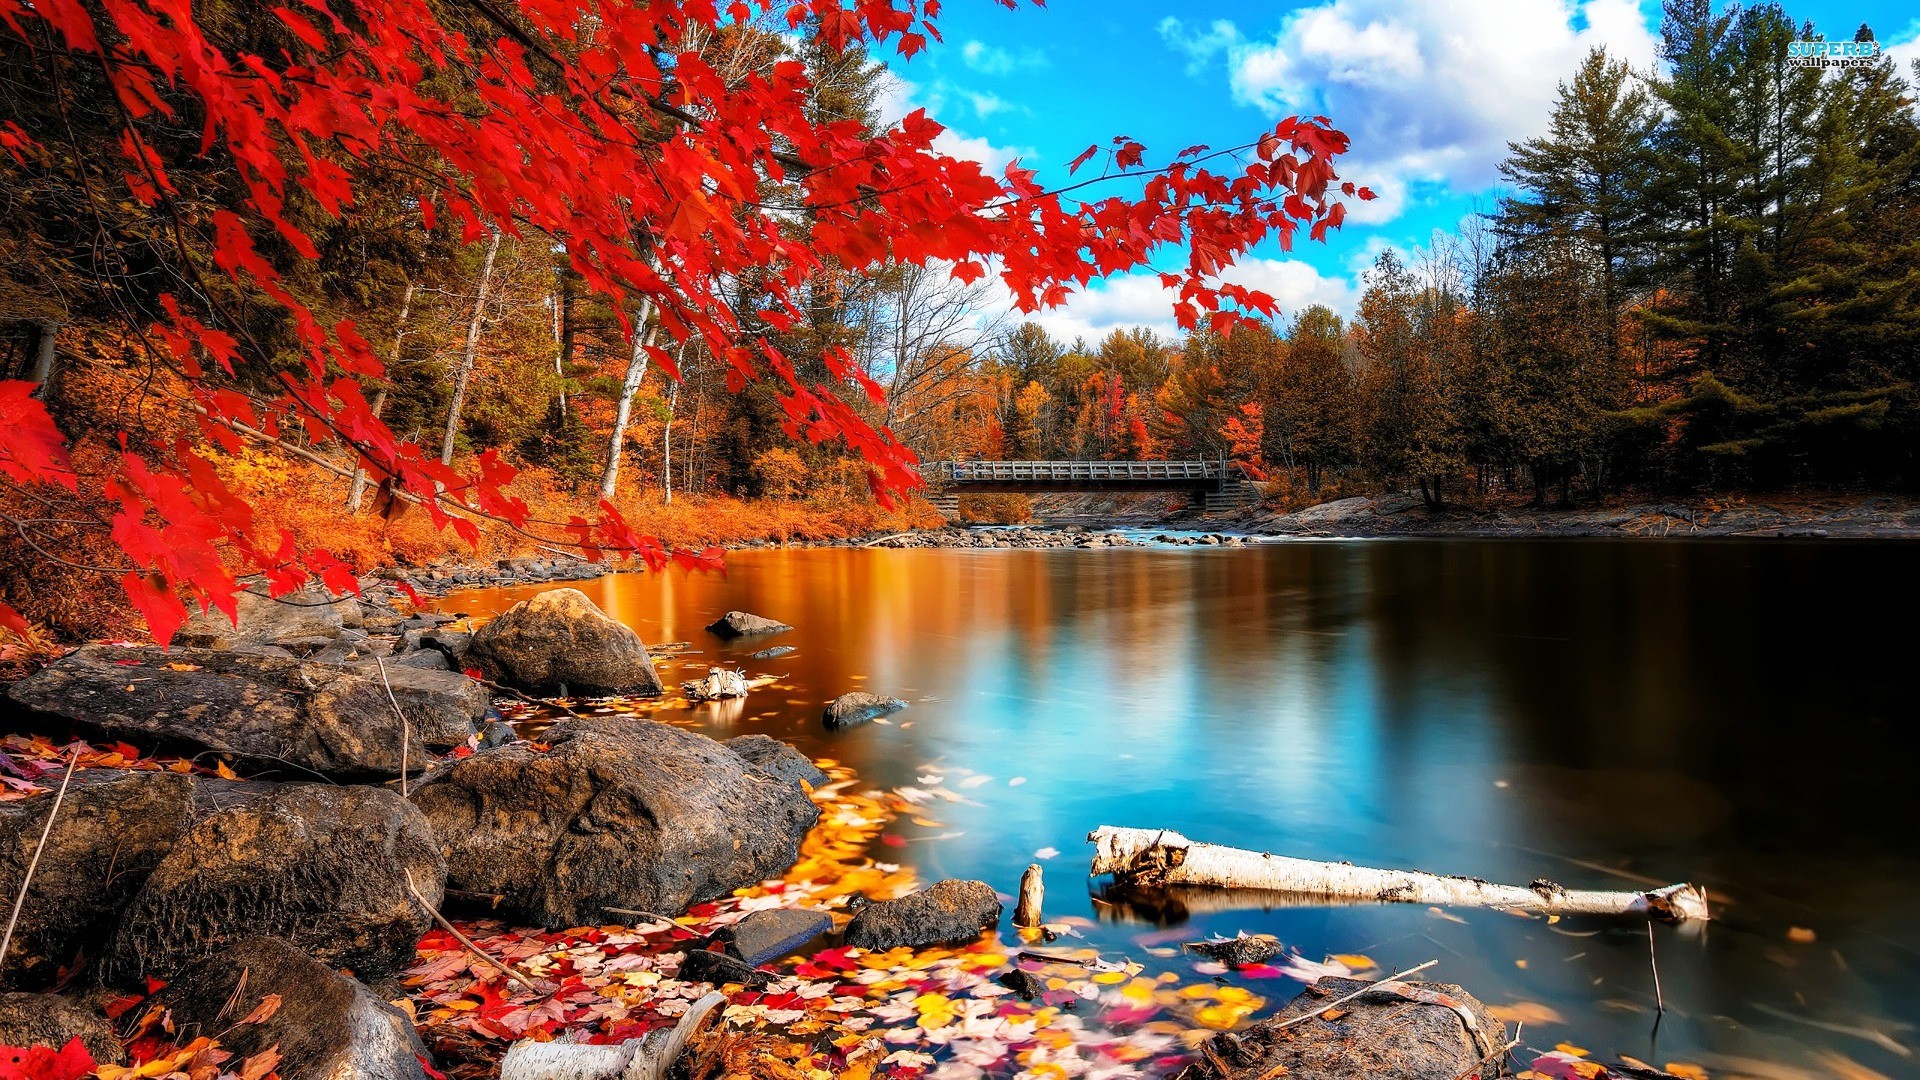 autumn lake